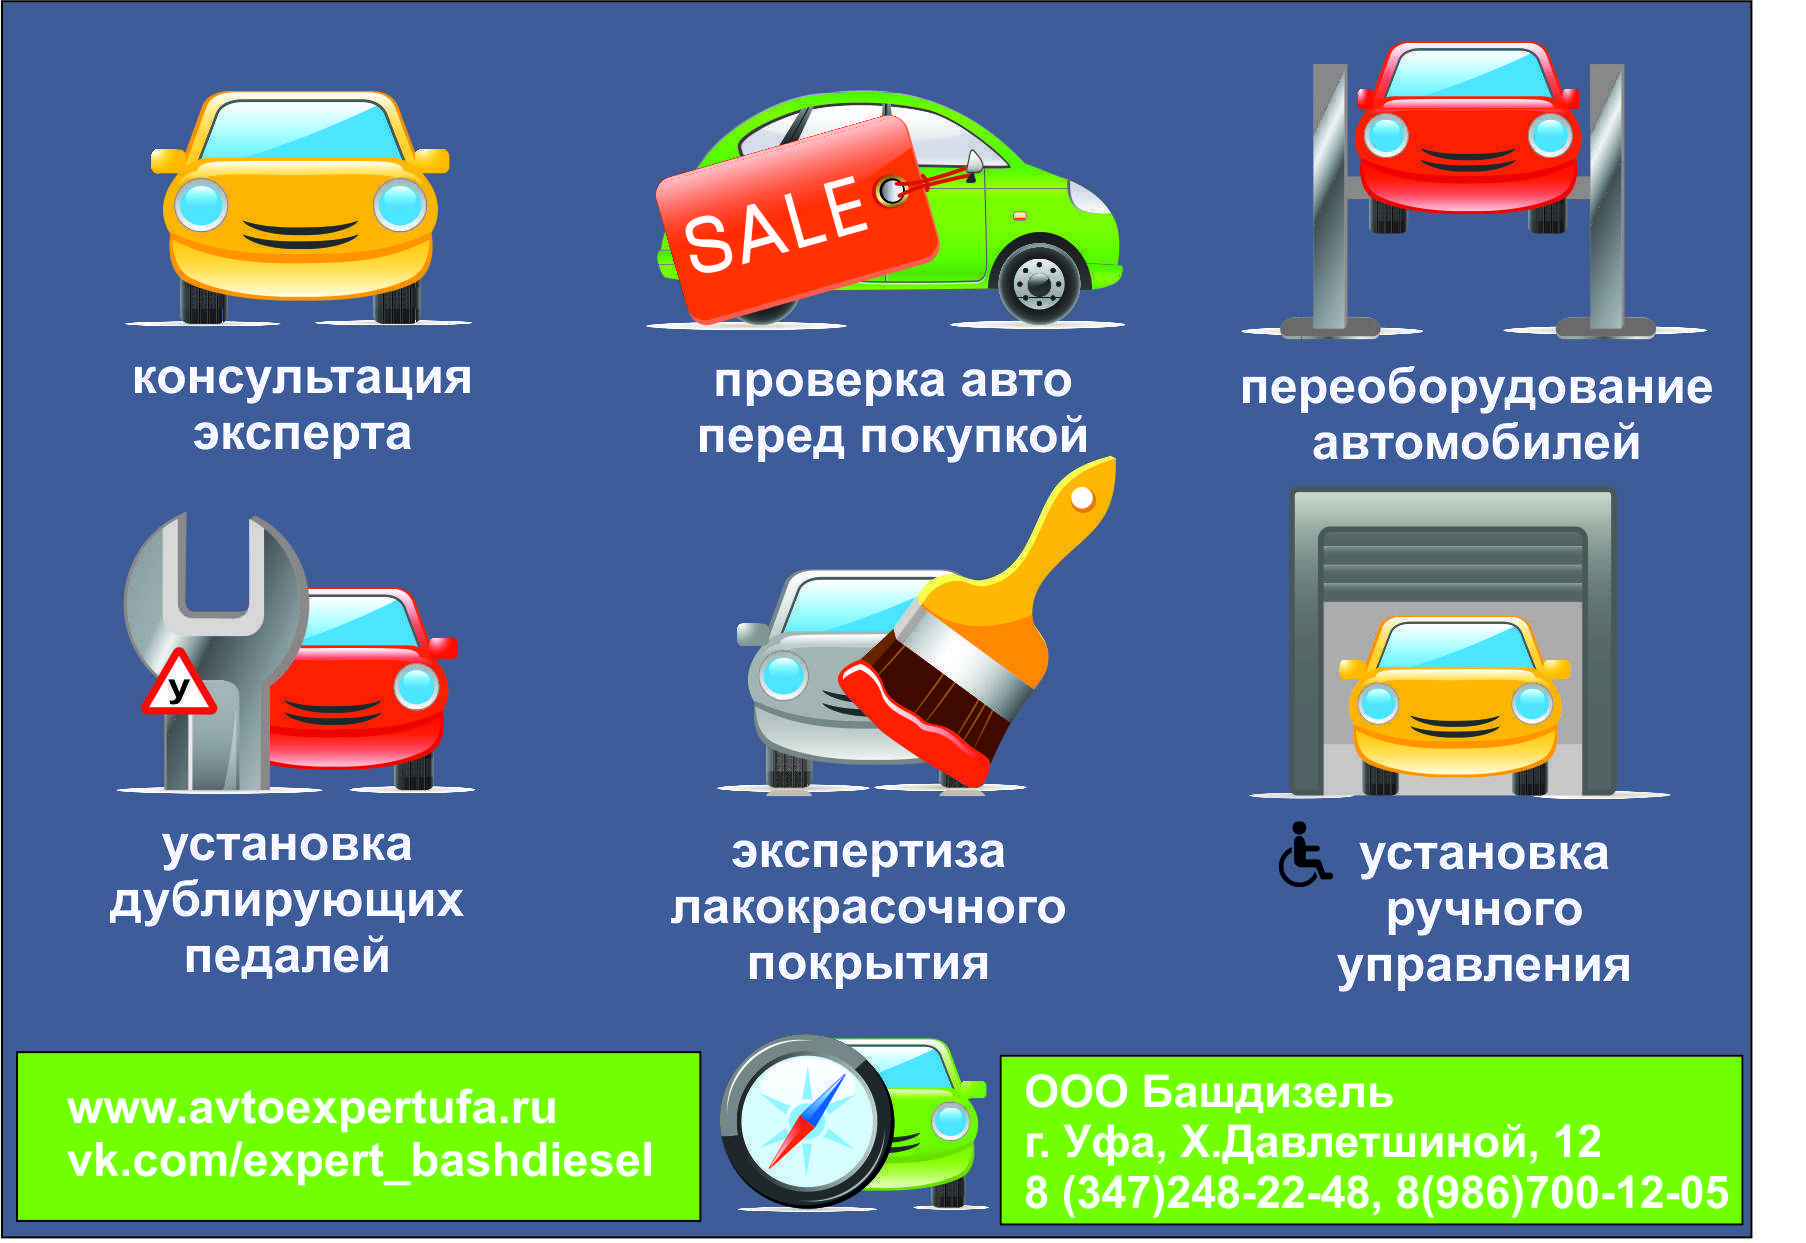 Способы проверки юридической чистоты автомобиля при покупке